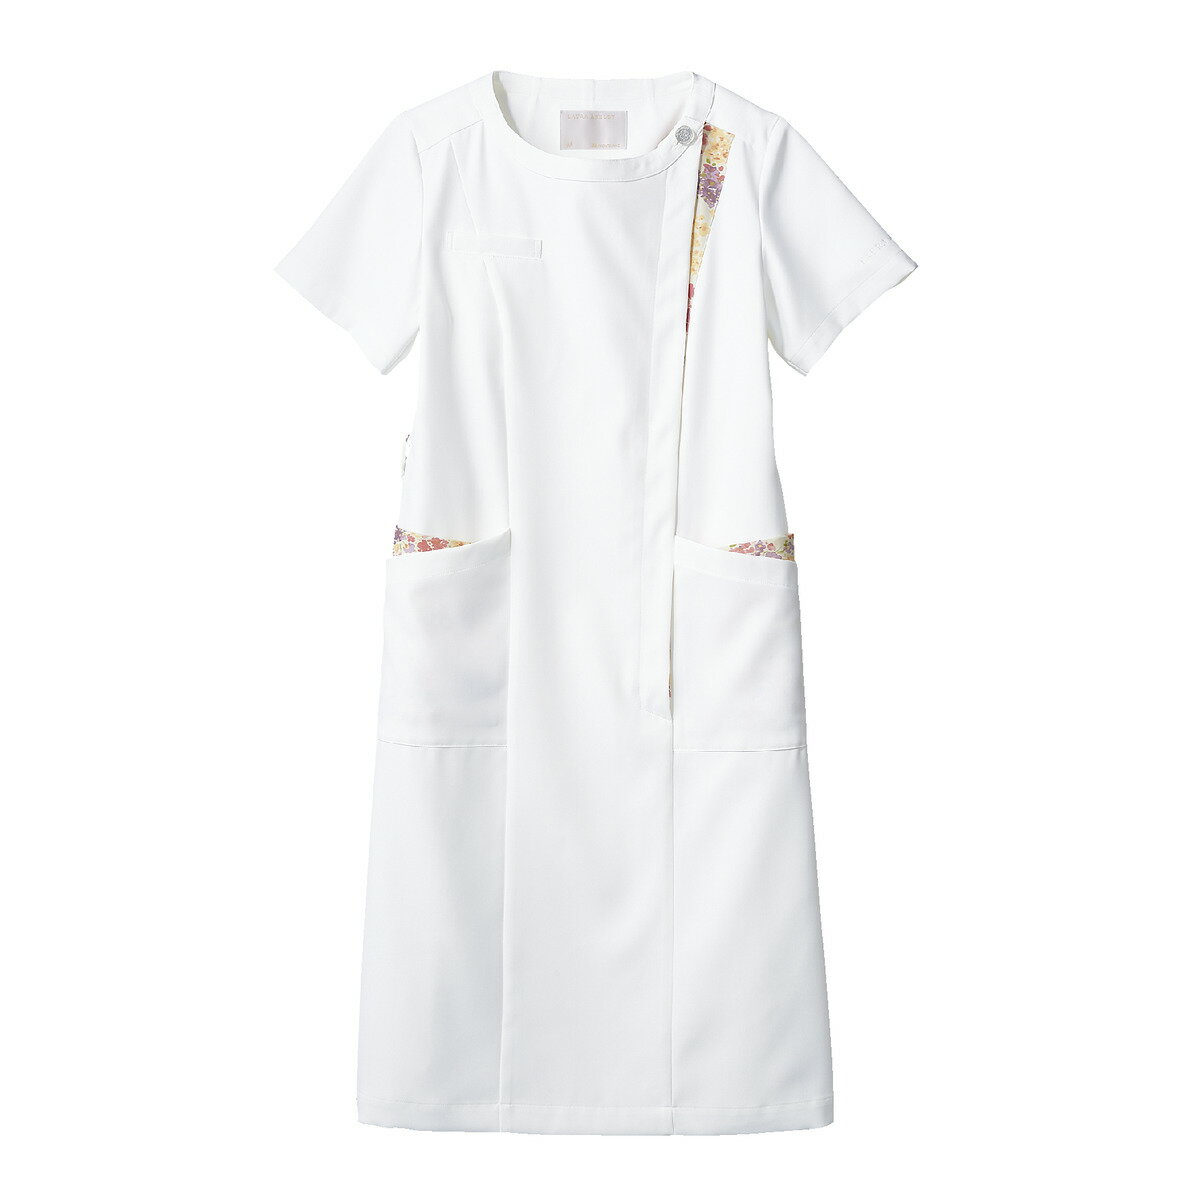 ローラアシュレイ LW411 ナースワンピース LAURA ASHLEY ナースウェア モンブラン 白衣 レディース 女性用 医療 看護